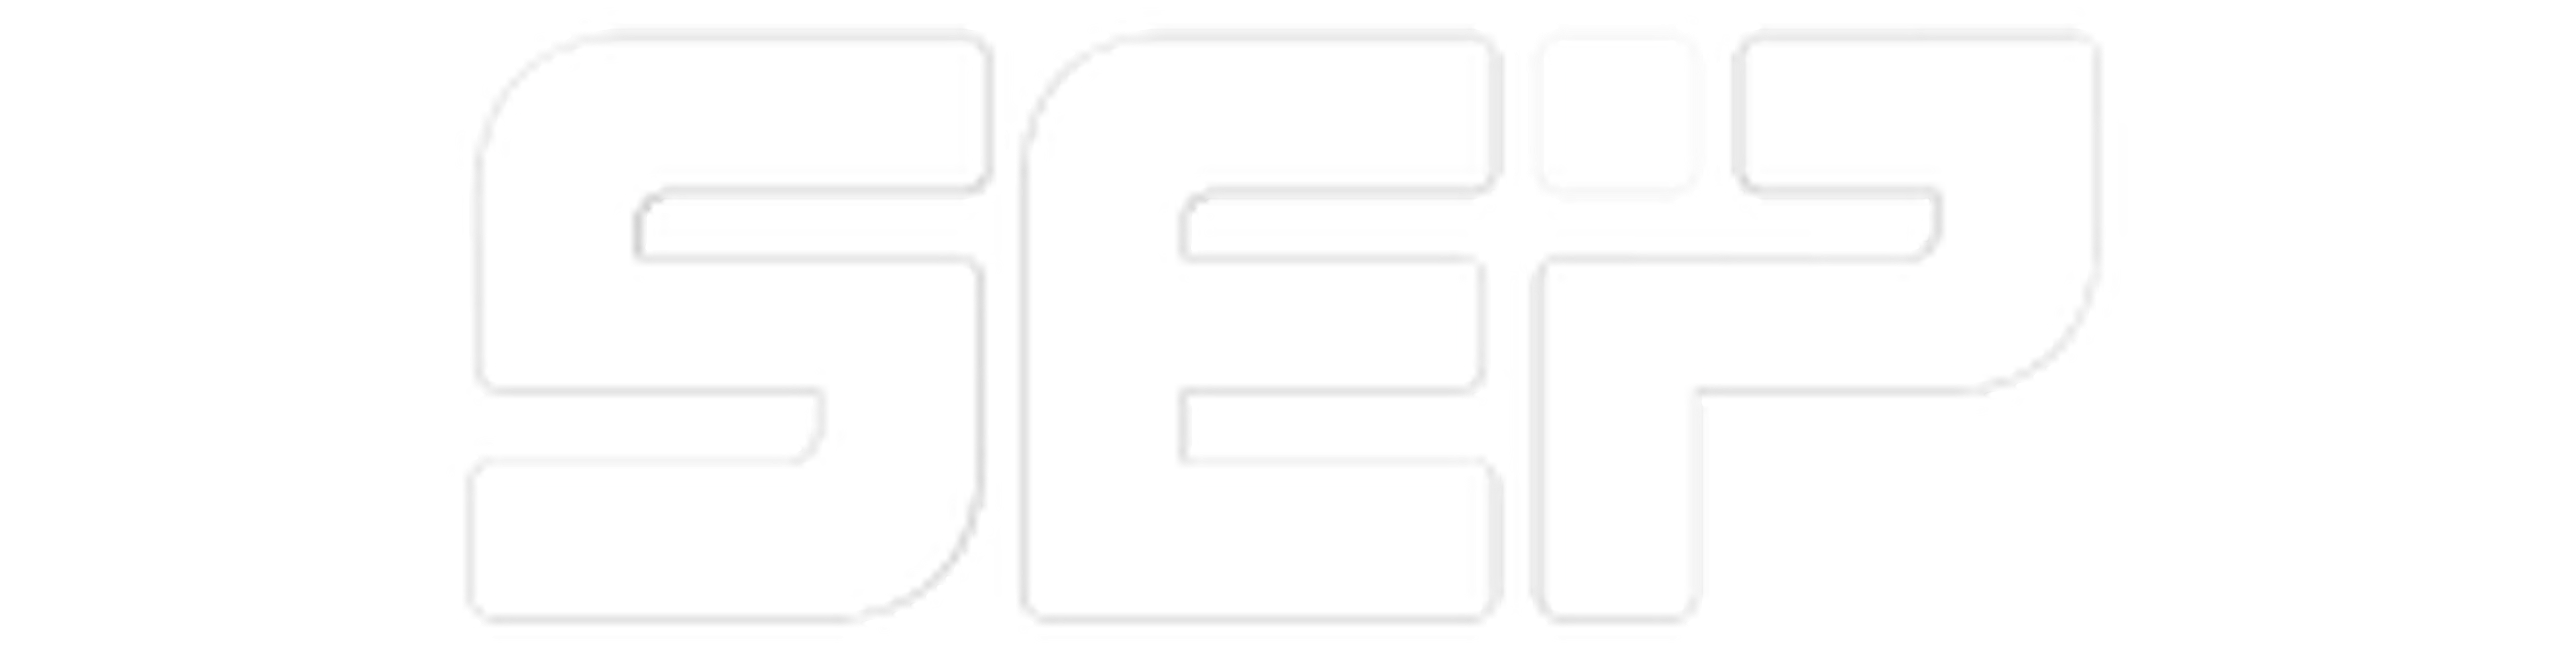 SEP logo white